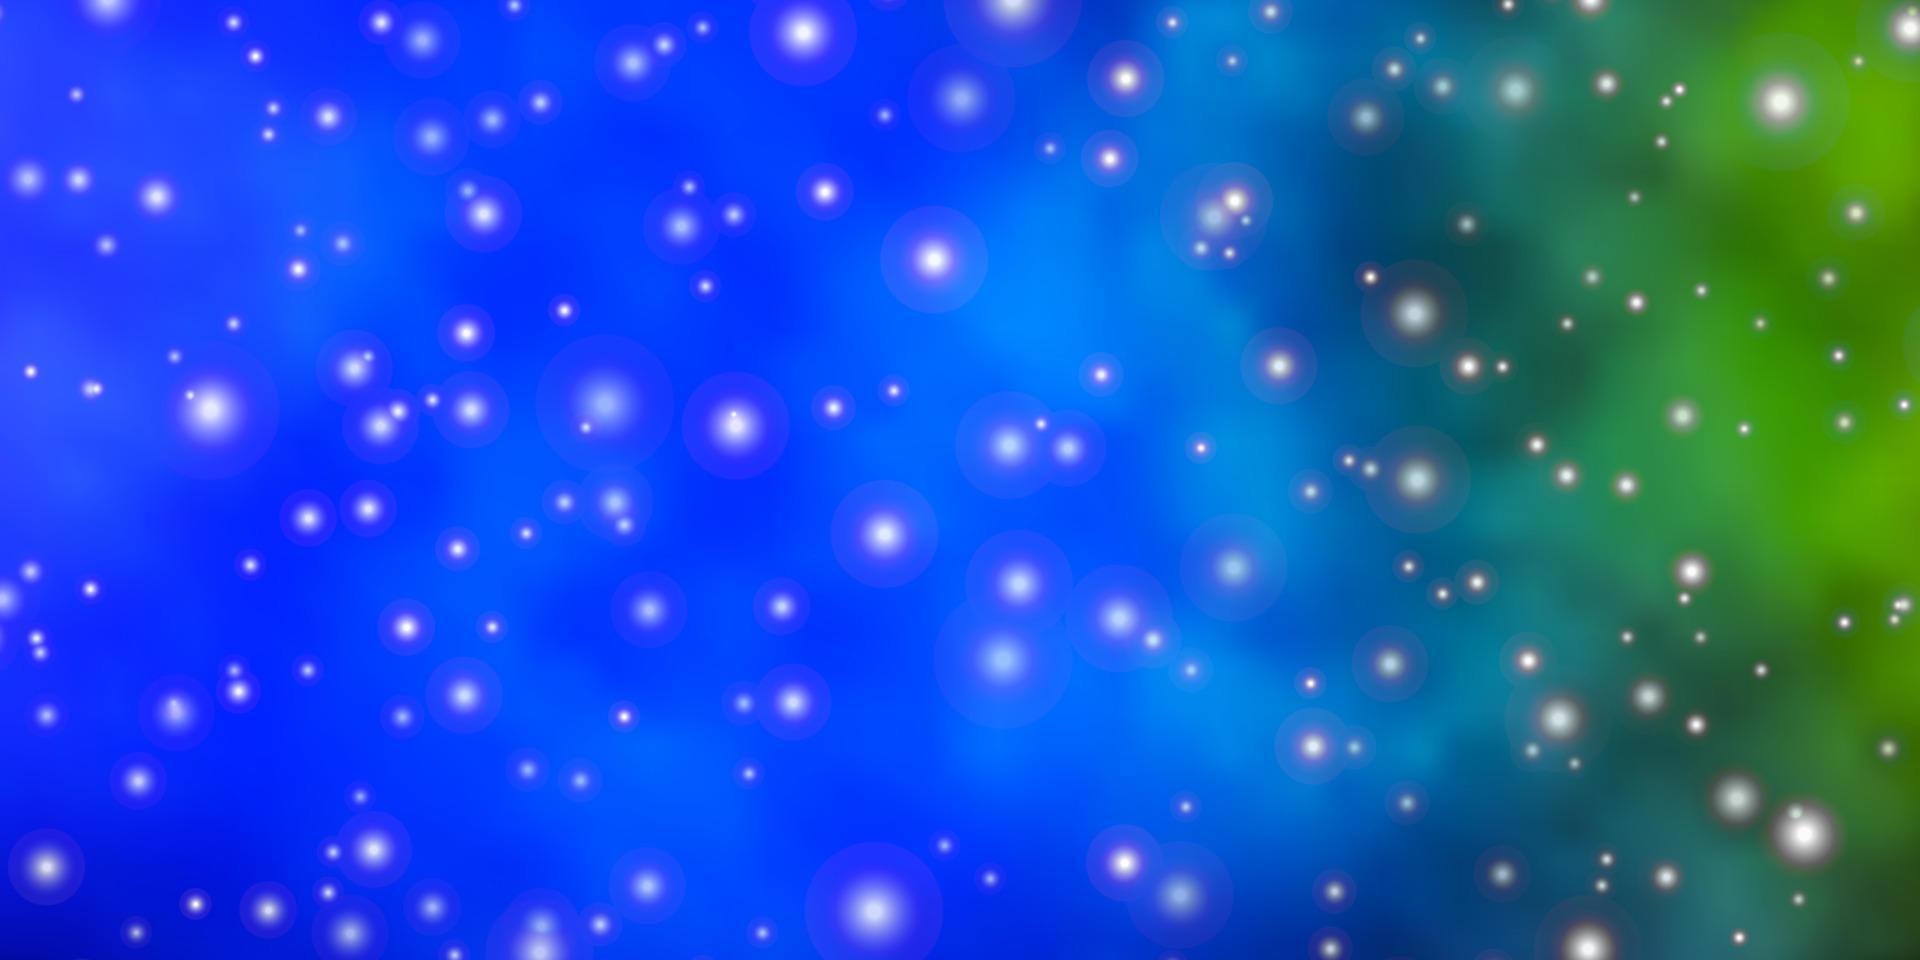 ljusblå, grön vektorbakgrund med små och stora stjärnor. vektor